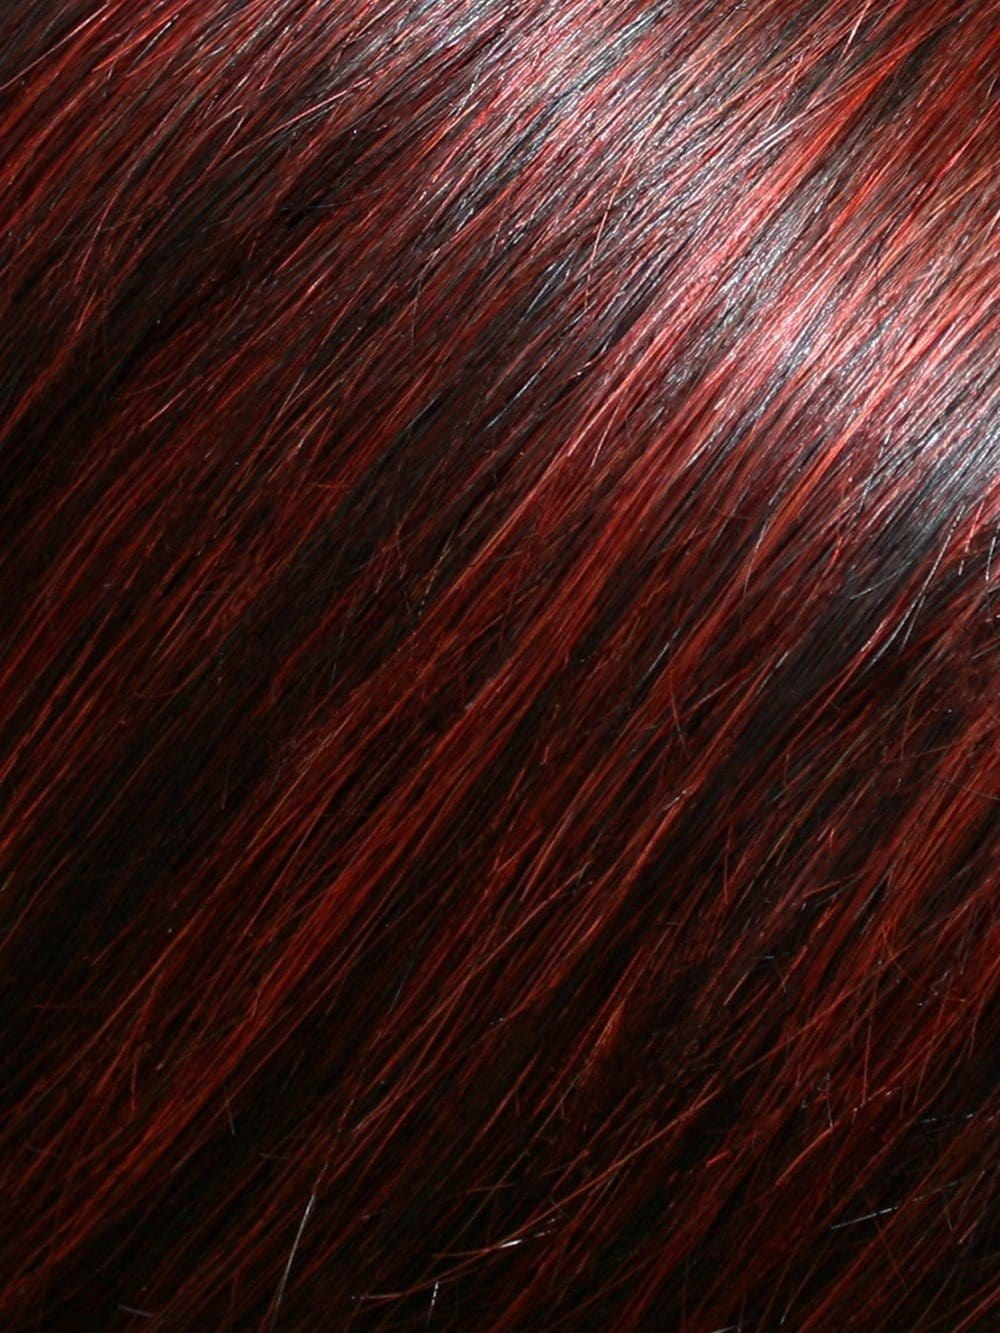 FS2V/31V Chocolate Cherry | Black/Brown Violet, Medium Red/Violet Blend with Red/Violet Bold Highlights